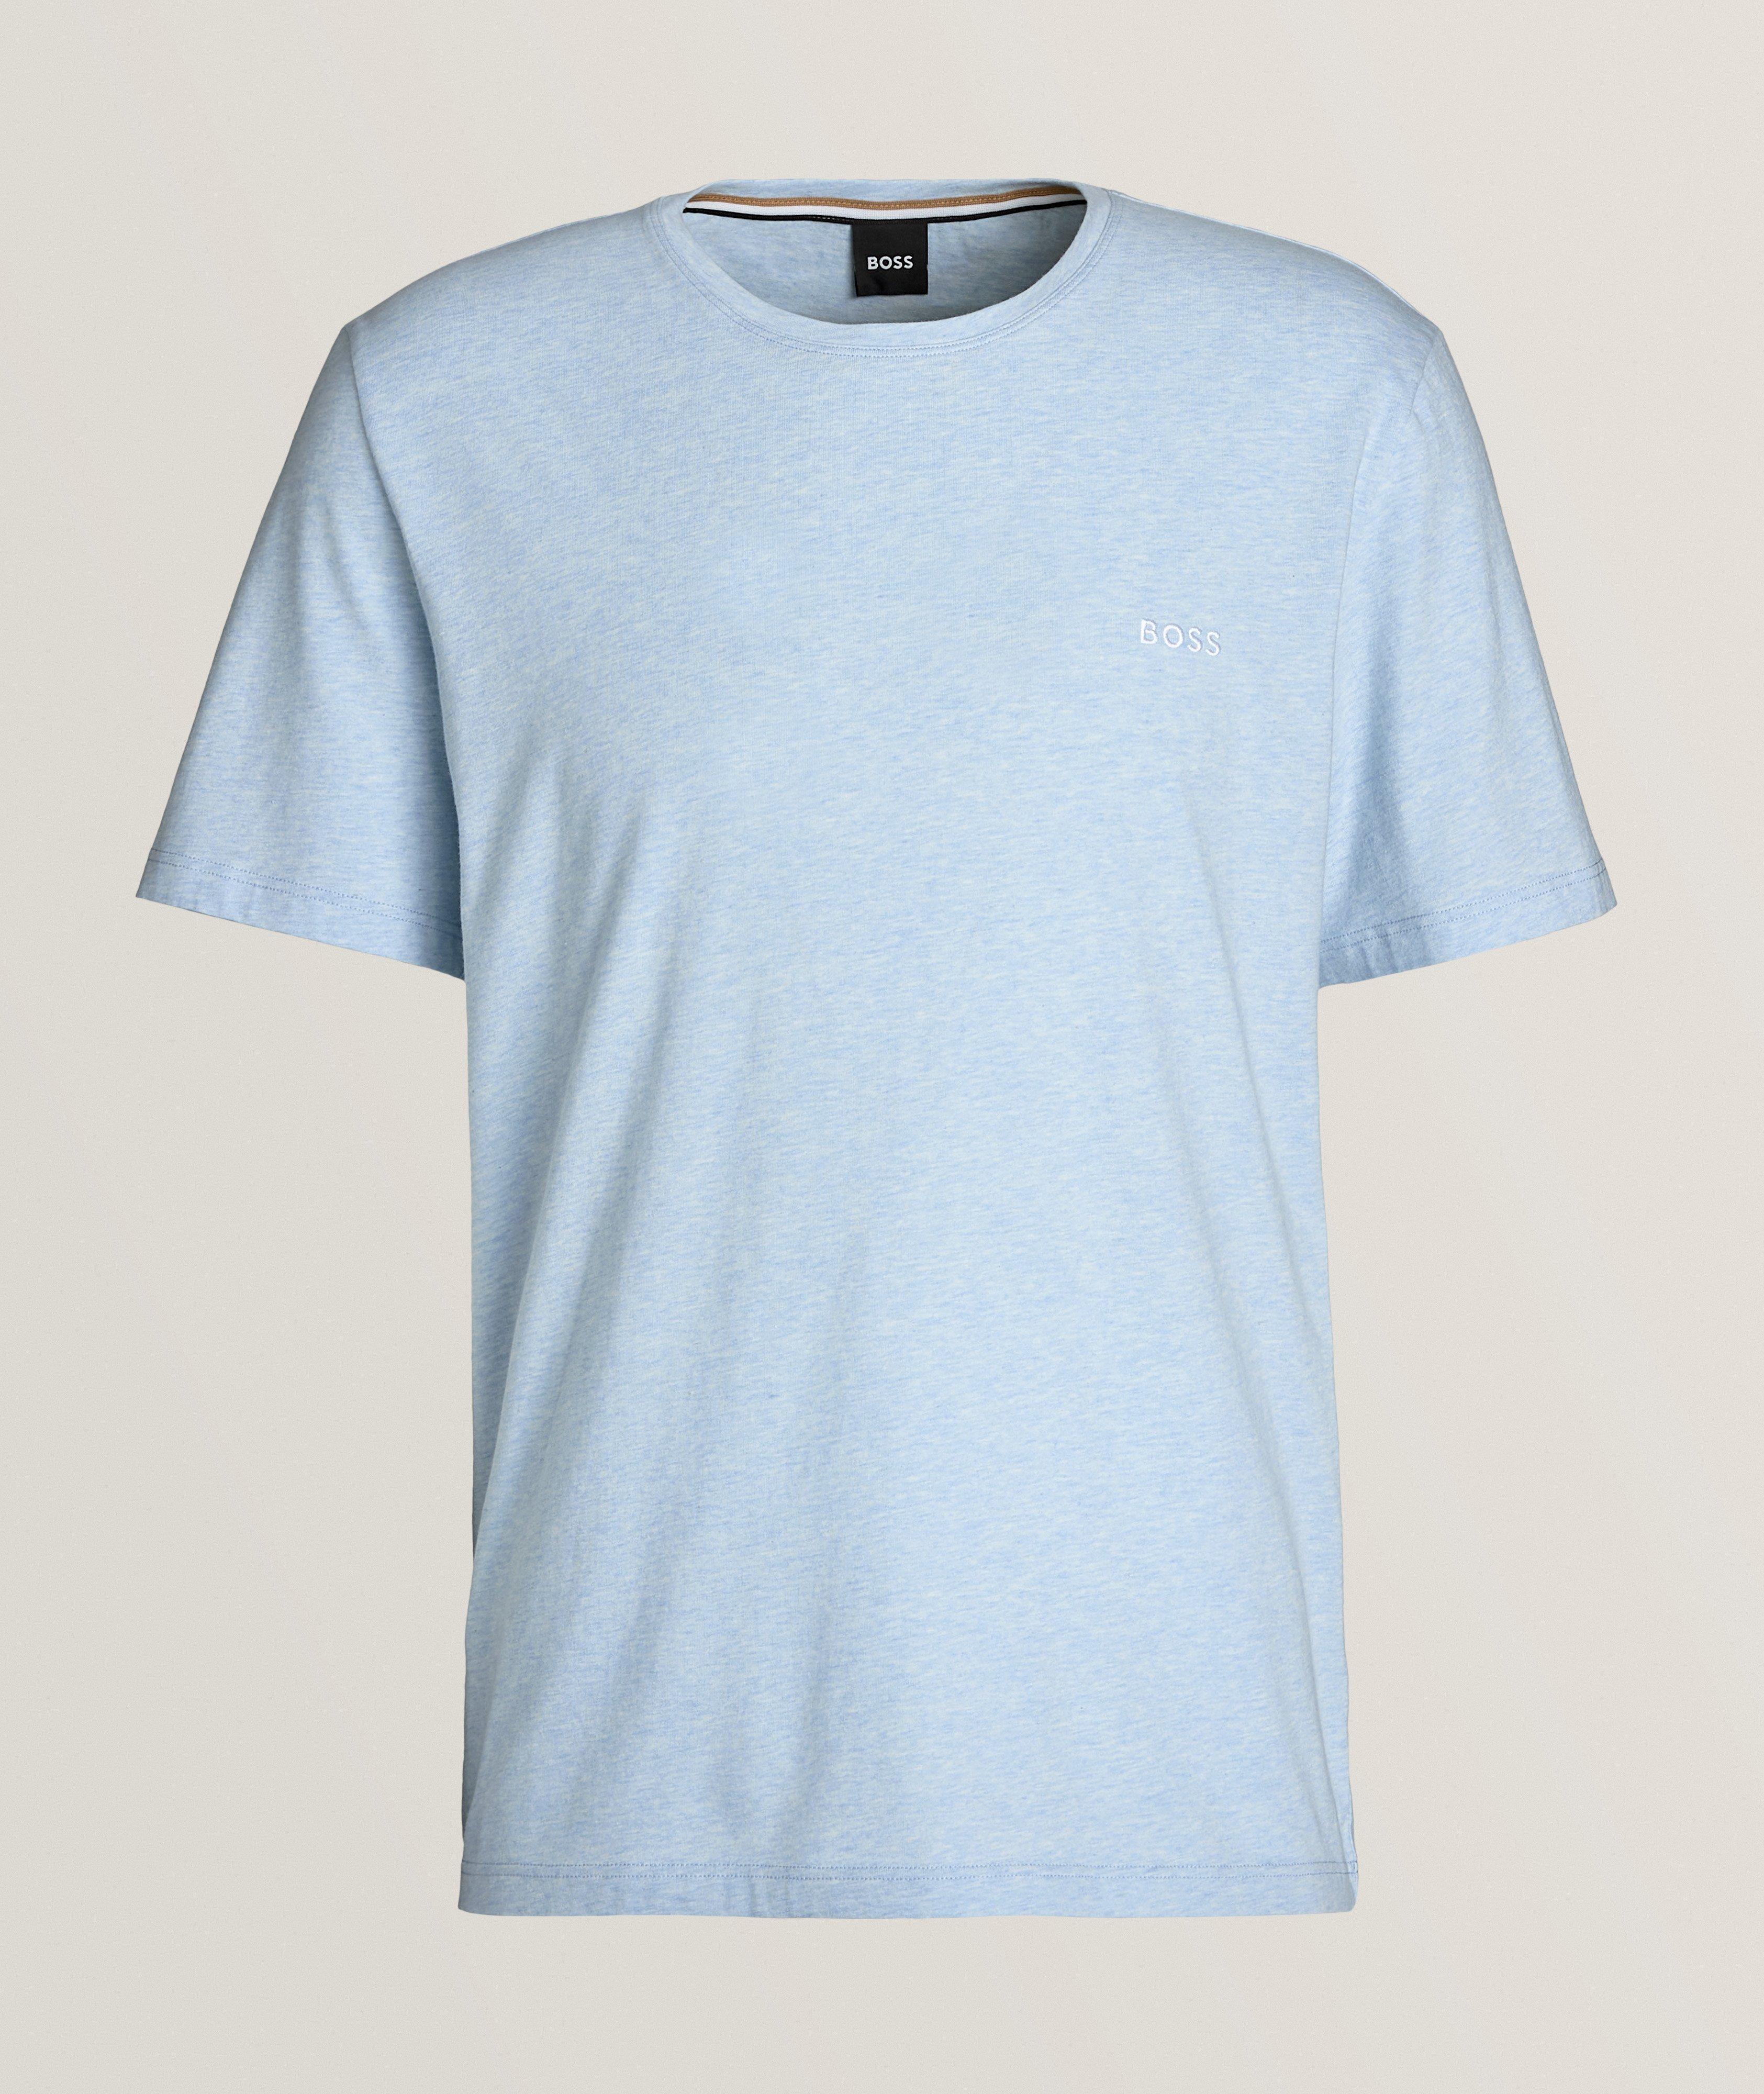 T-shirt en coton extensible, collection à agencer image 0